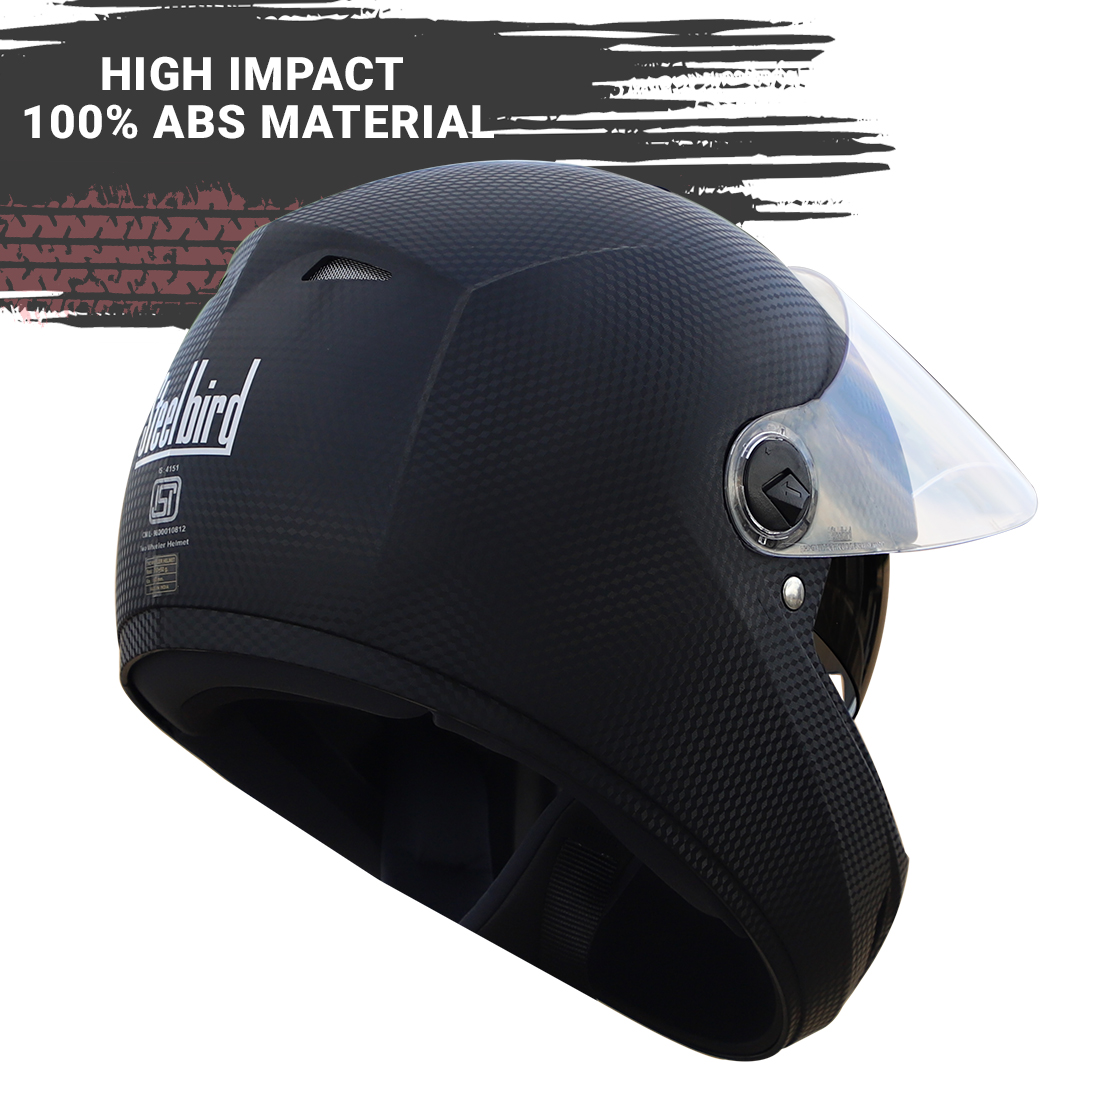 Steelbird Cyborg Double Visor Full Face Helmet, Inner Smoke Sun Shield And Outer Clear Visor ( Dashing Black )